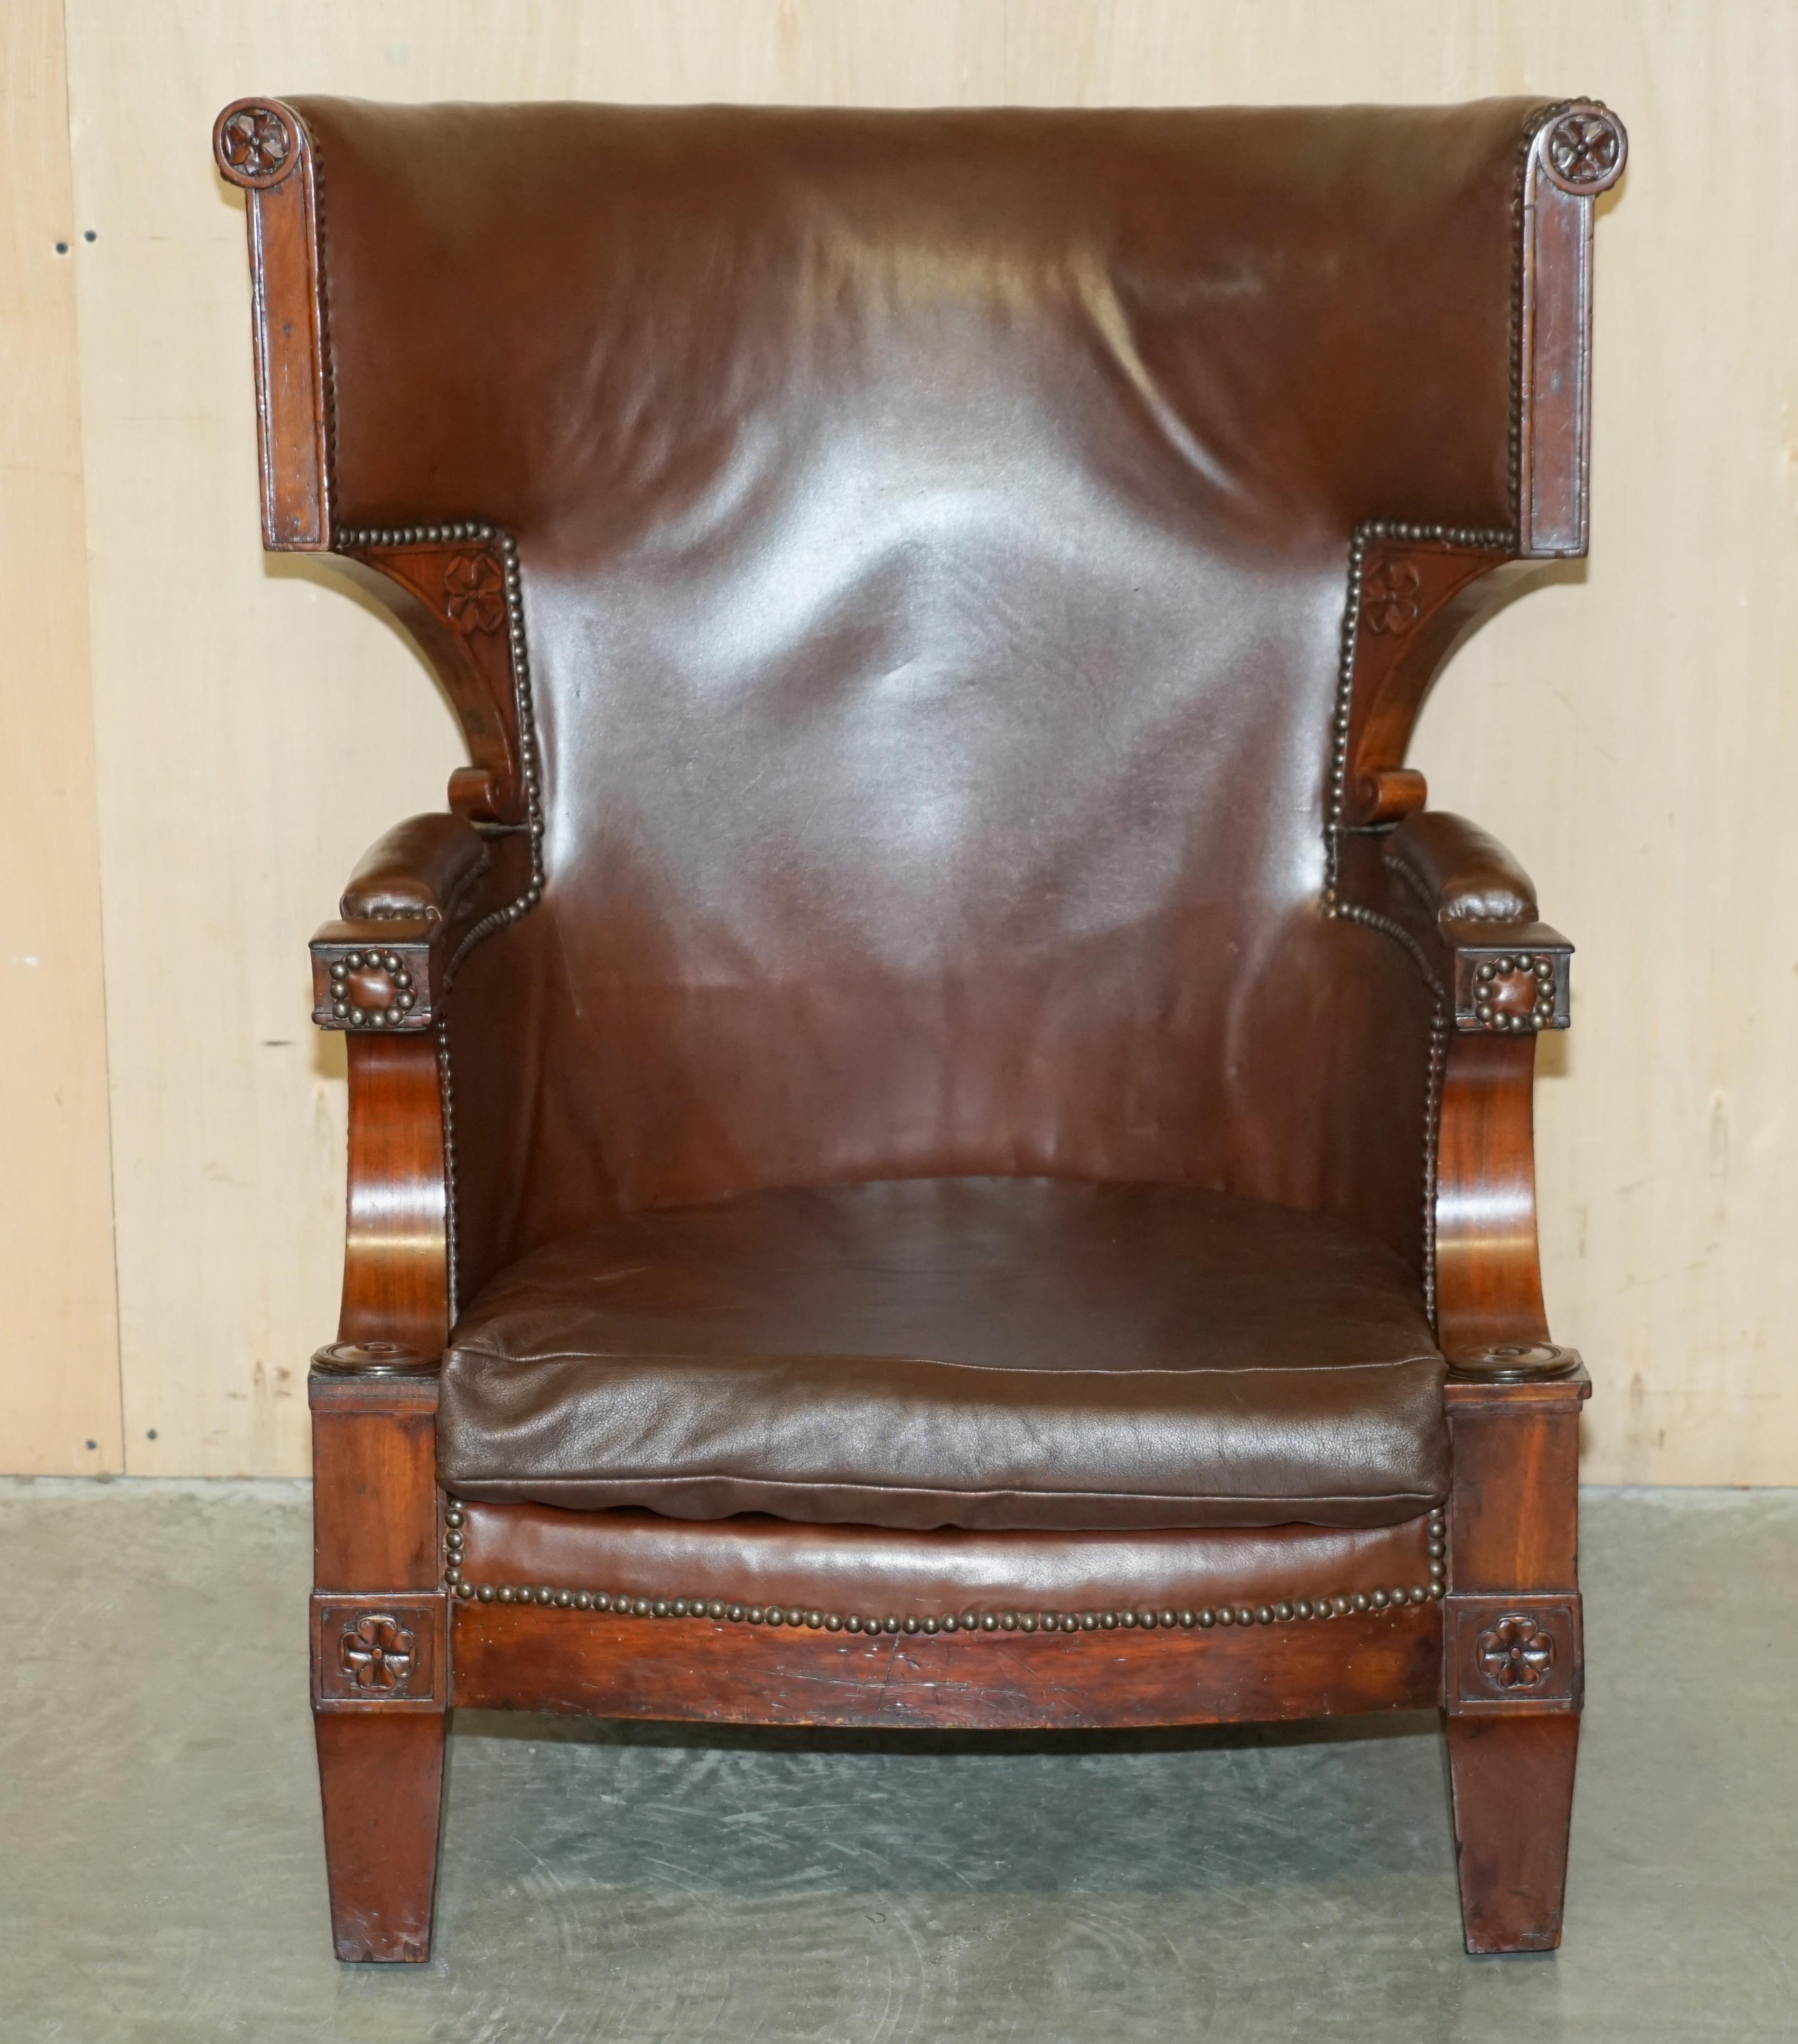 Royal House Antiques

The House of Antiques a le plaisir d'offrir à la vente ce fauteuil de forme très unique, datant de 1830, William IV, en cuir brun et en acajou, avec un cadre ornemental sculpté. 

Veuillez noter que les frais de livraison